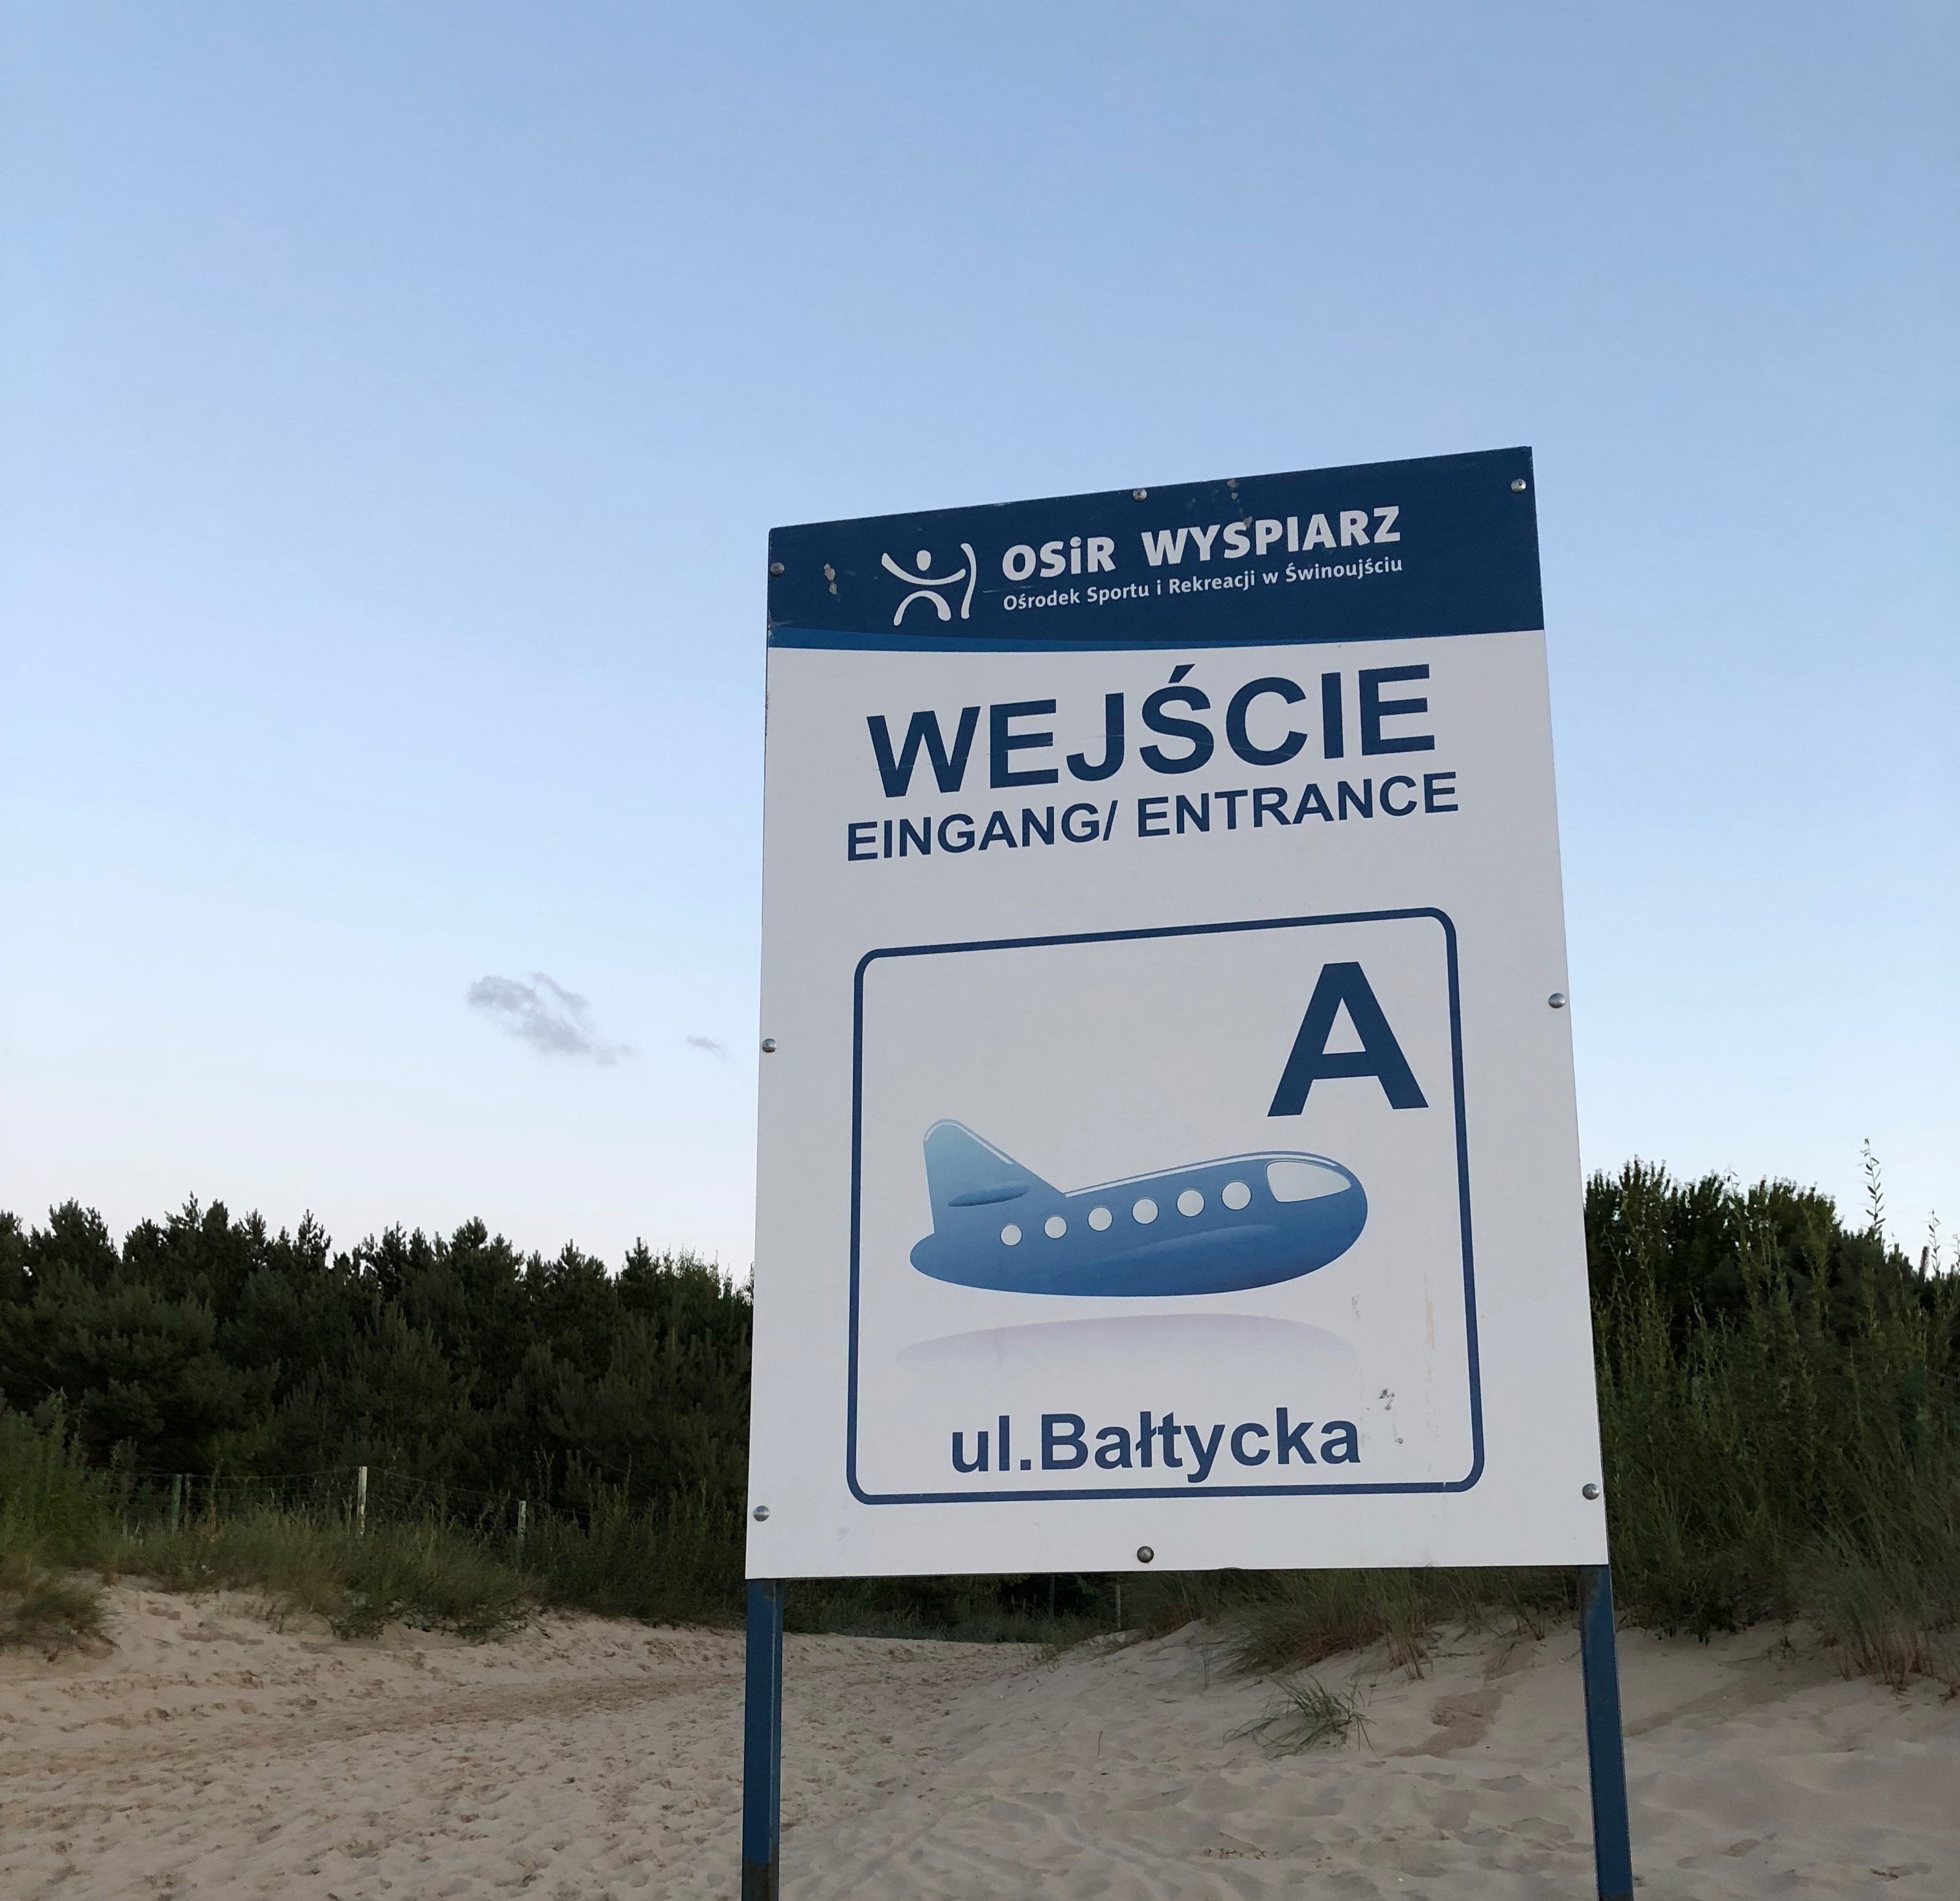 Tablica oznaczająca wejście na plażę z napisem: Wejście, Eingang, Entrance, A, ul. Bałtycka, i wizarunkiem samolotu. W tle fragment piaszczystej wydmy porośniętej roślinnością.